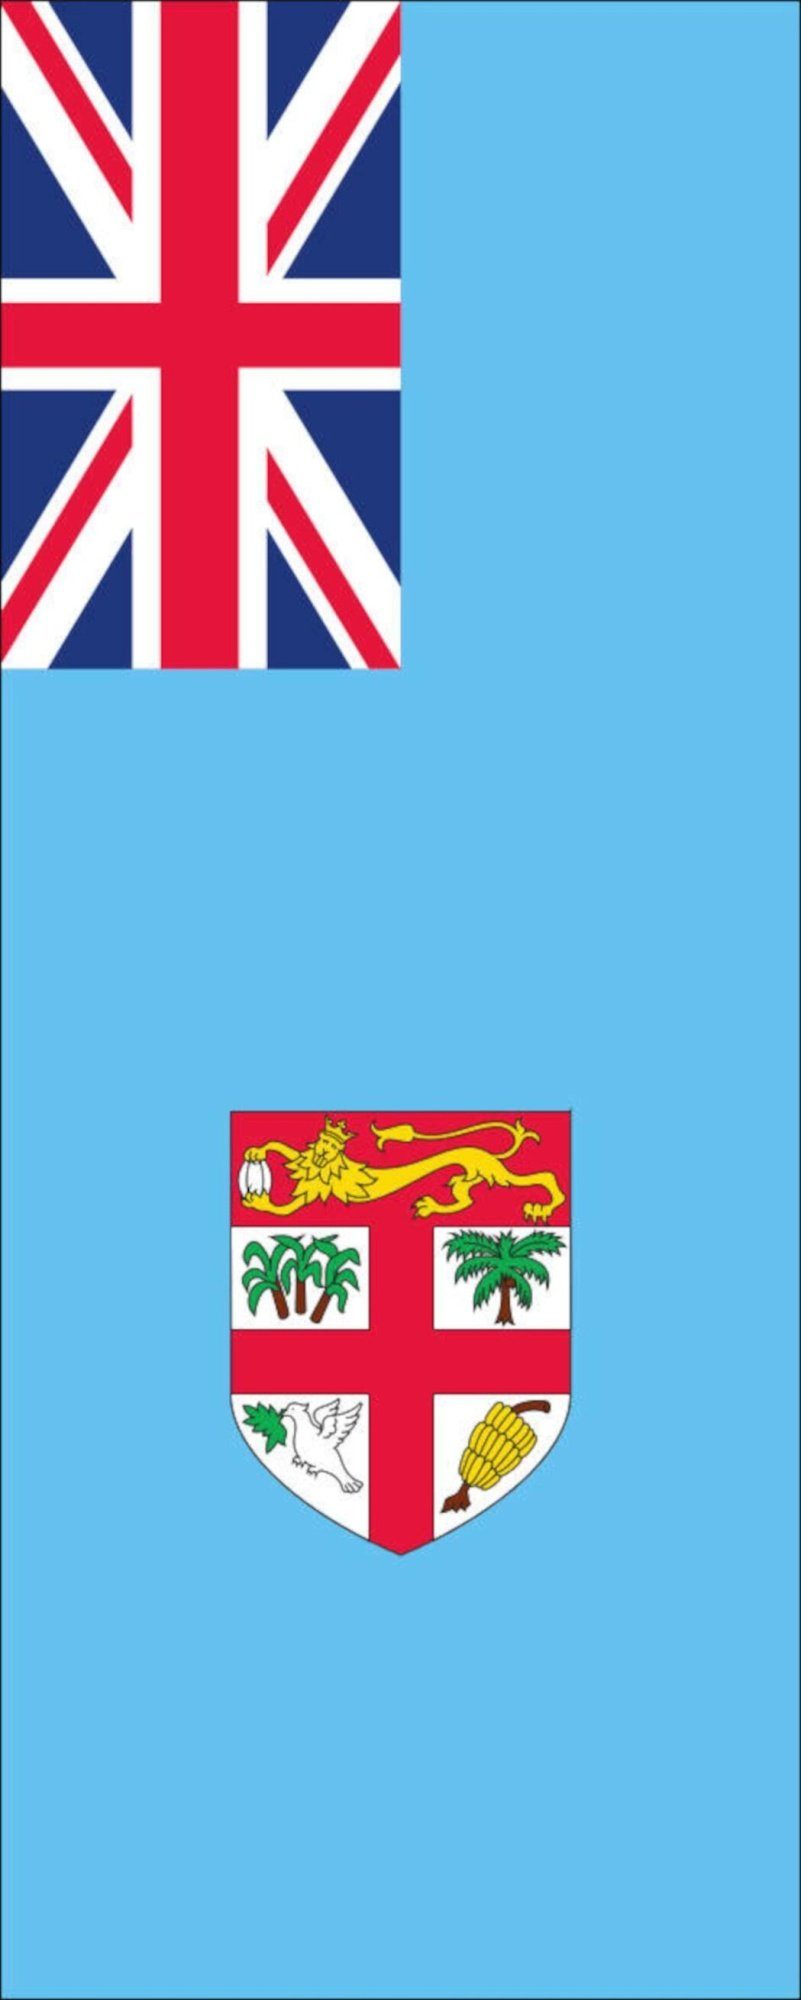 Flagge 110 Fidschi Flagge g/m² flaggenmeer Hochformat